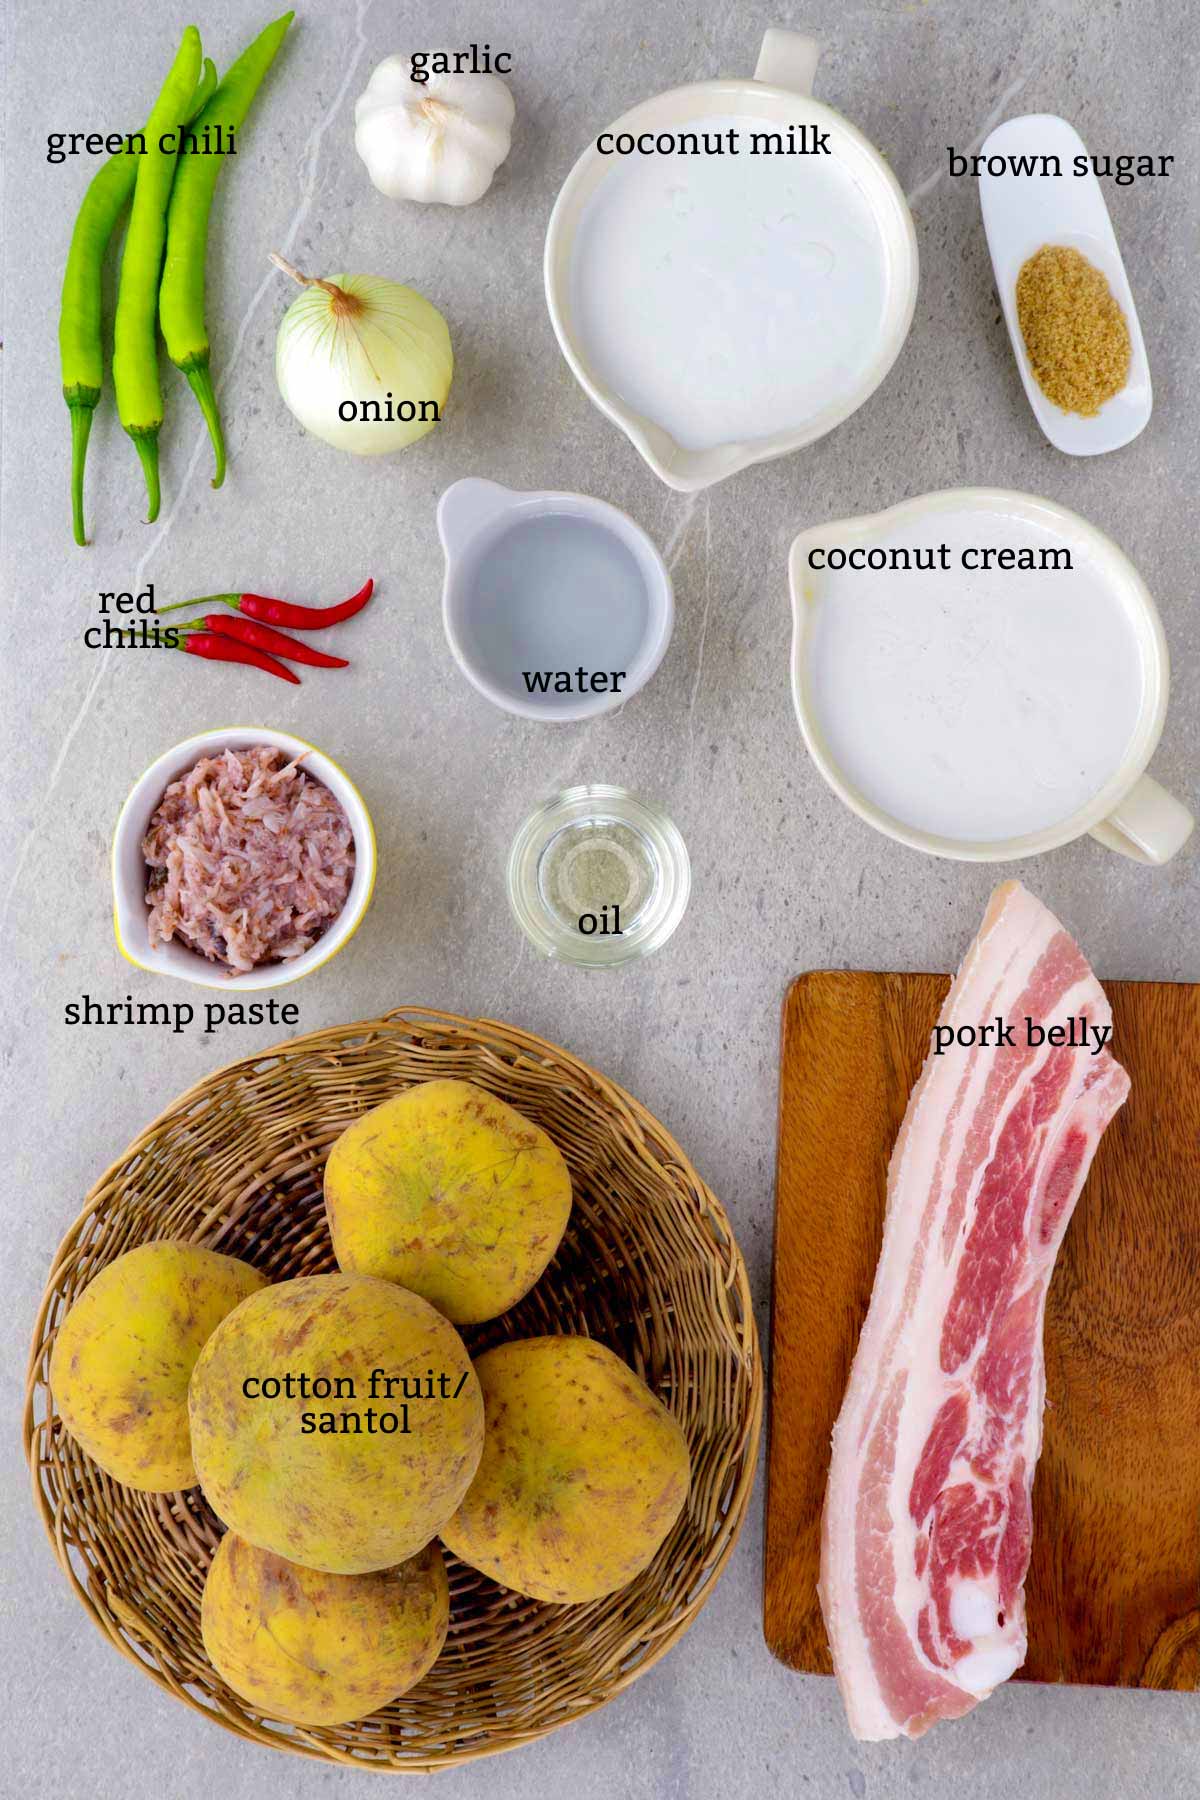 Ingredients for Sinantolan.